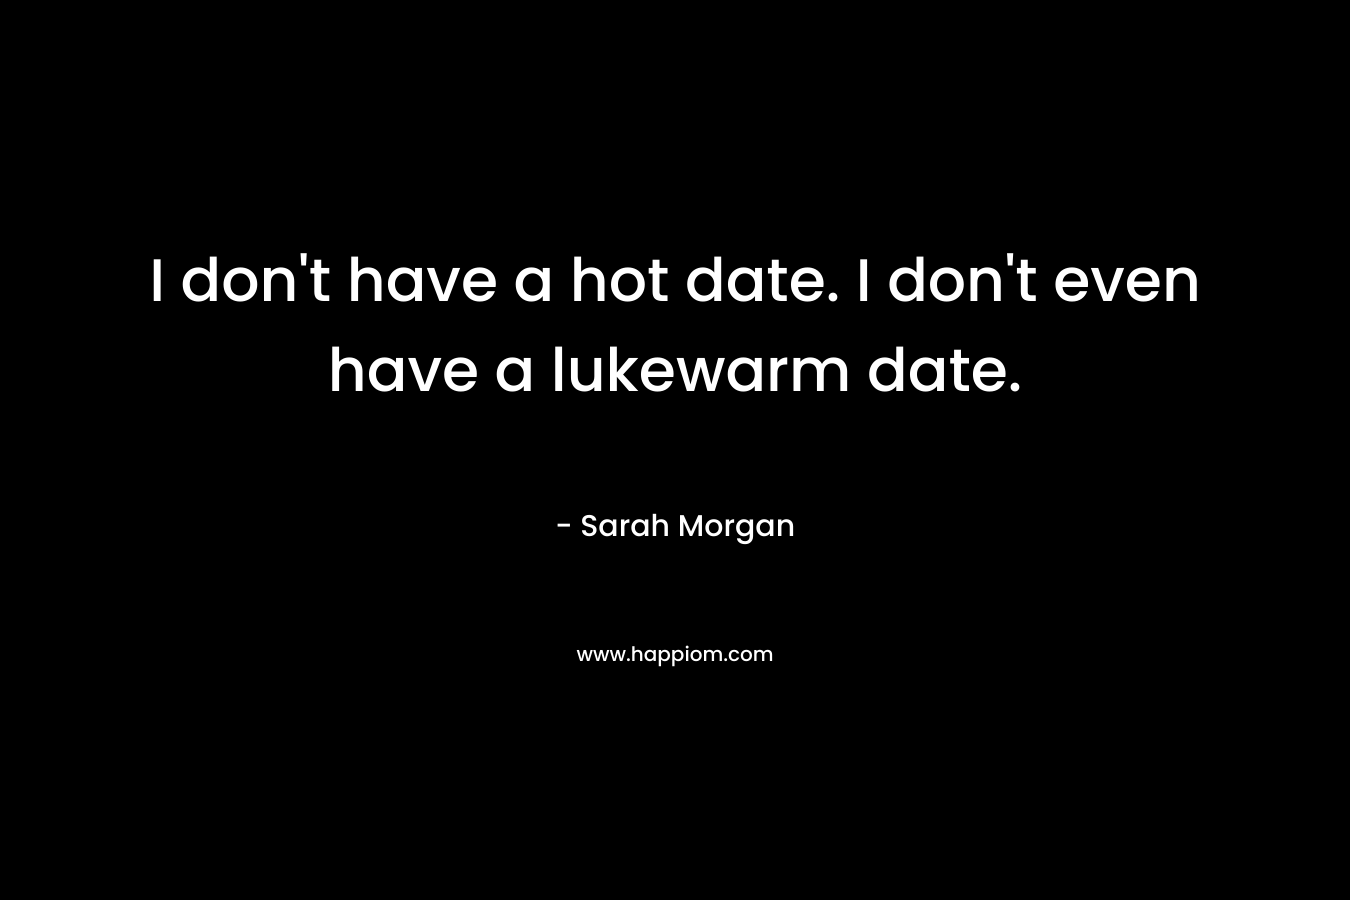 I don't have a hot date. I don't even have a lukewarm date.